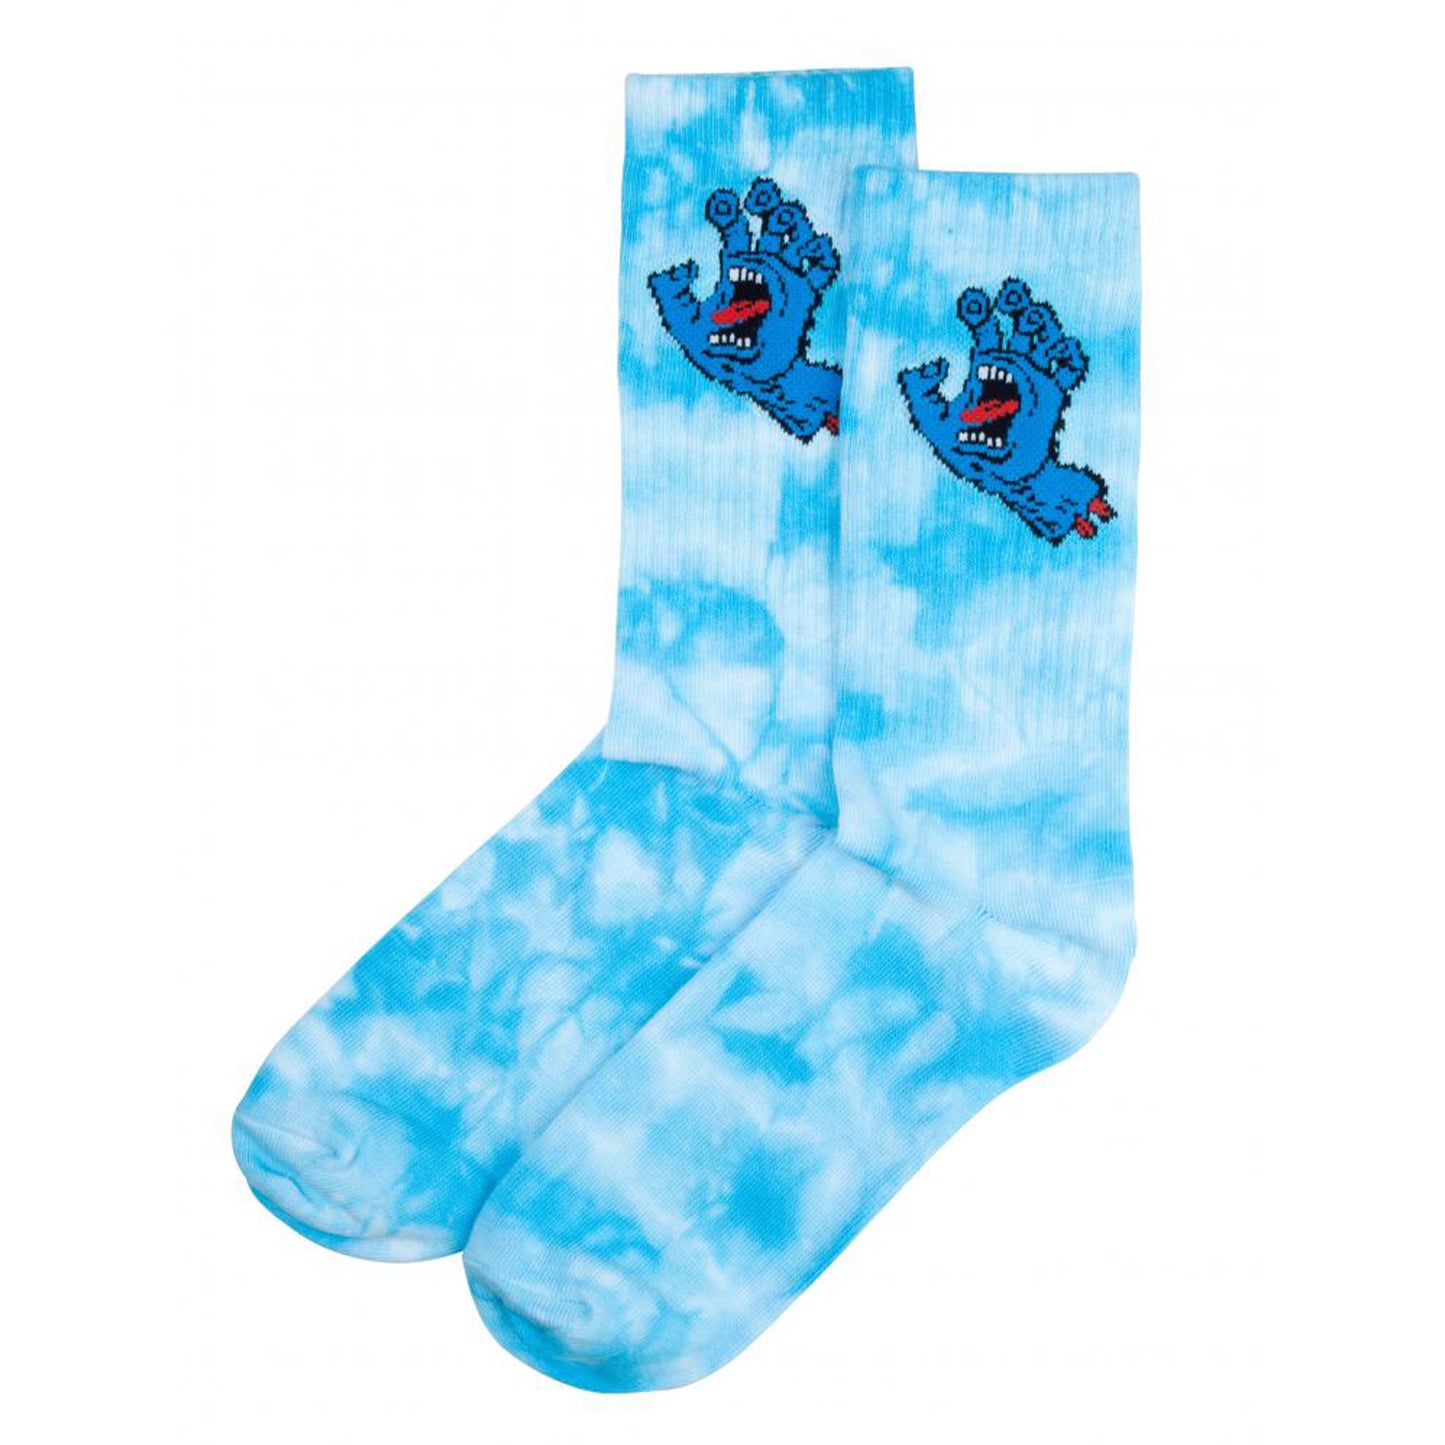 Santa Cruz Screaming Hand Tie Dye Socks - Blue Tie Dye - Prime Delux Store